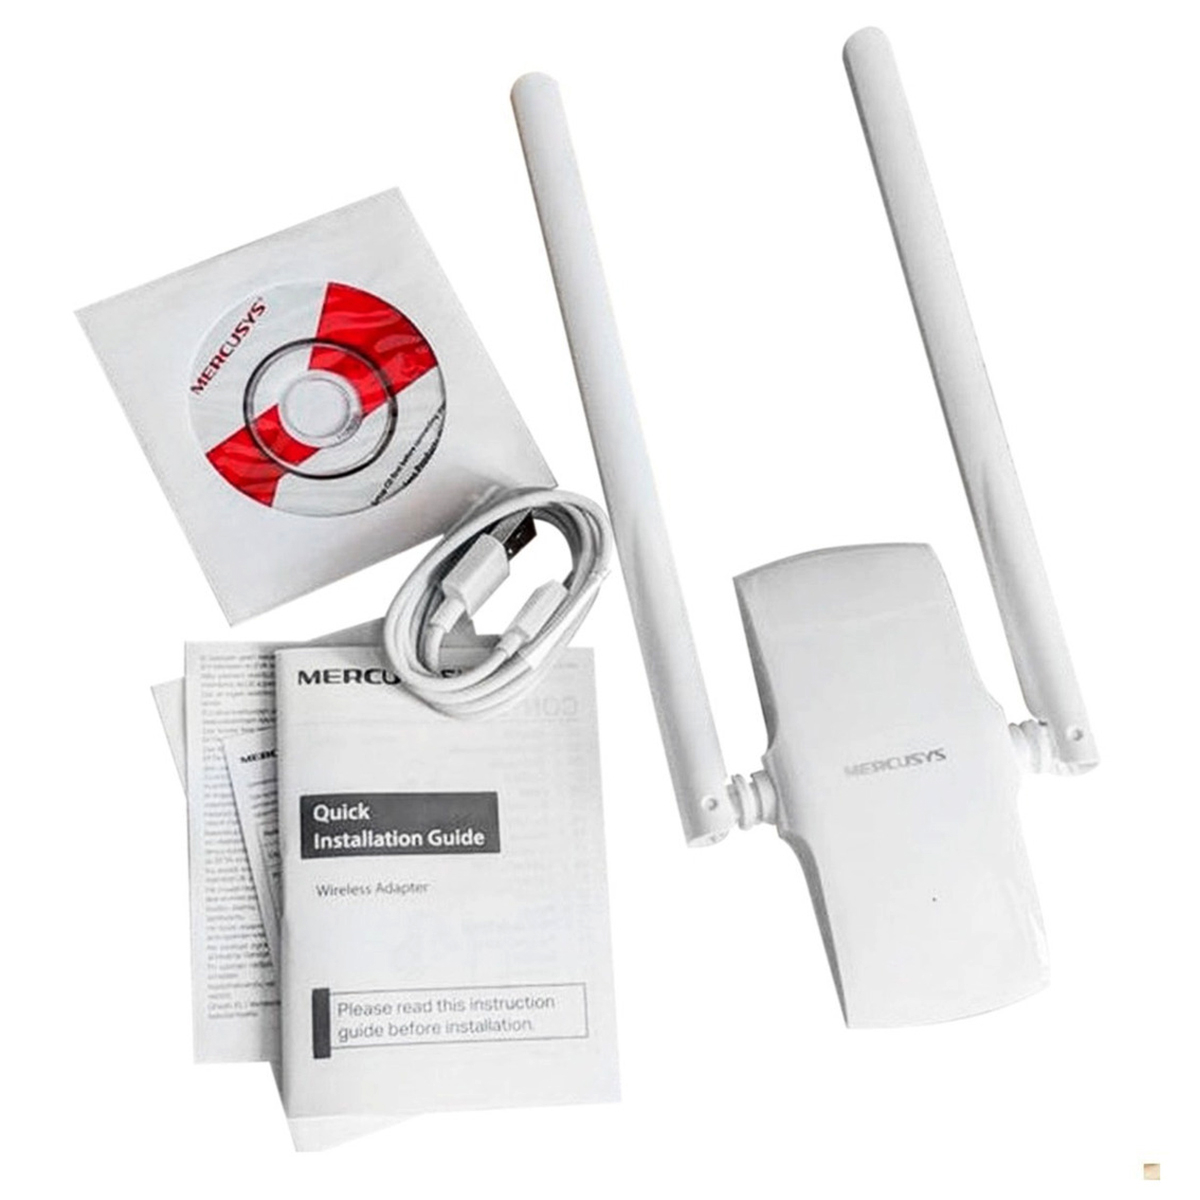 Antena Wifi Usb Rompemuros Mercusys MW300UH 300mbps 2.4ghz - Blanco